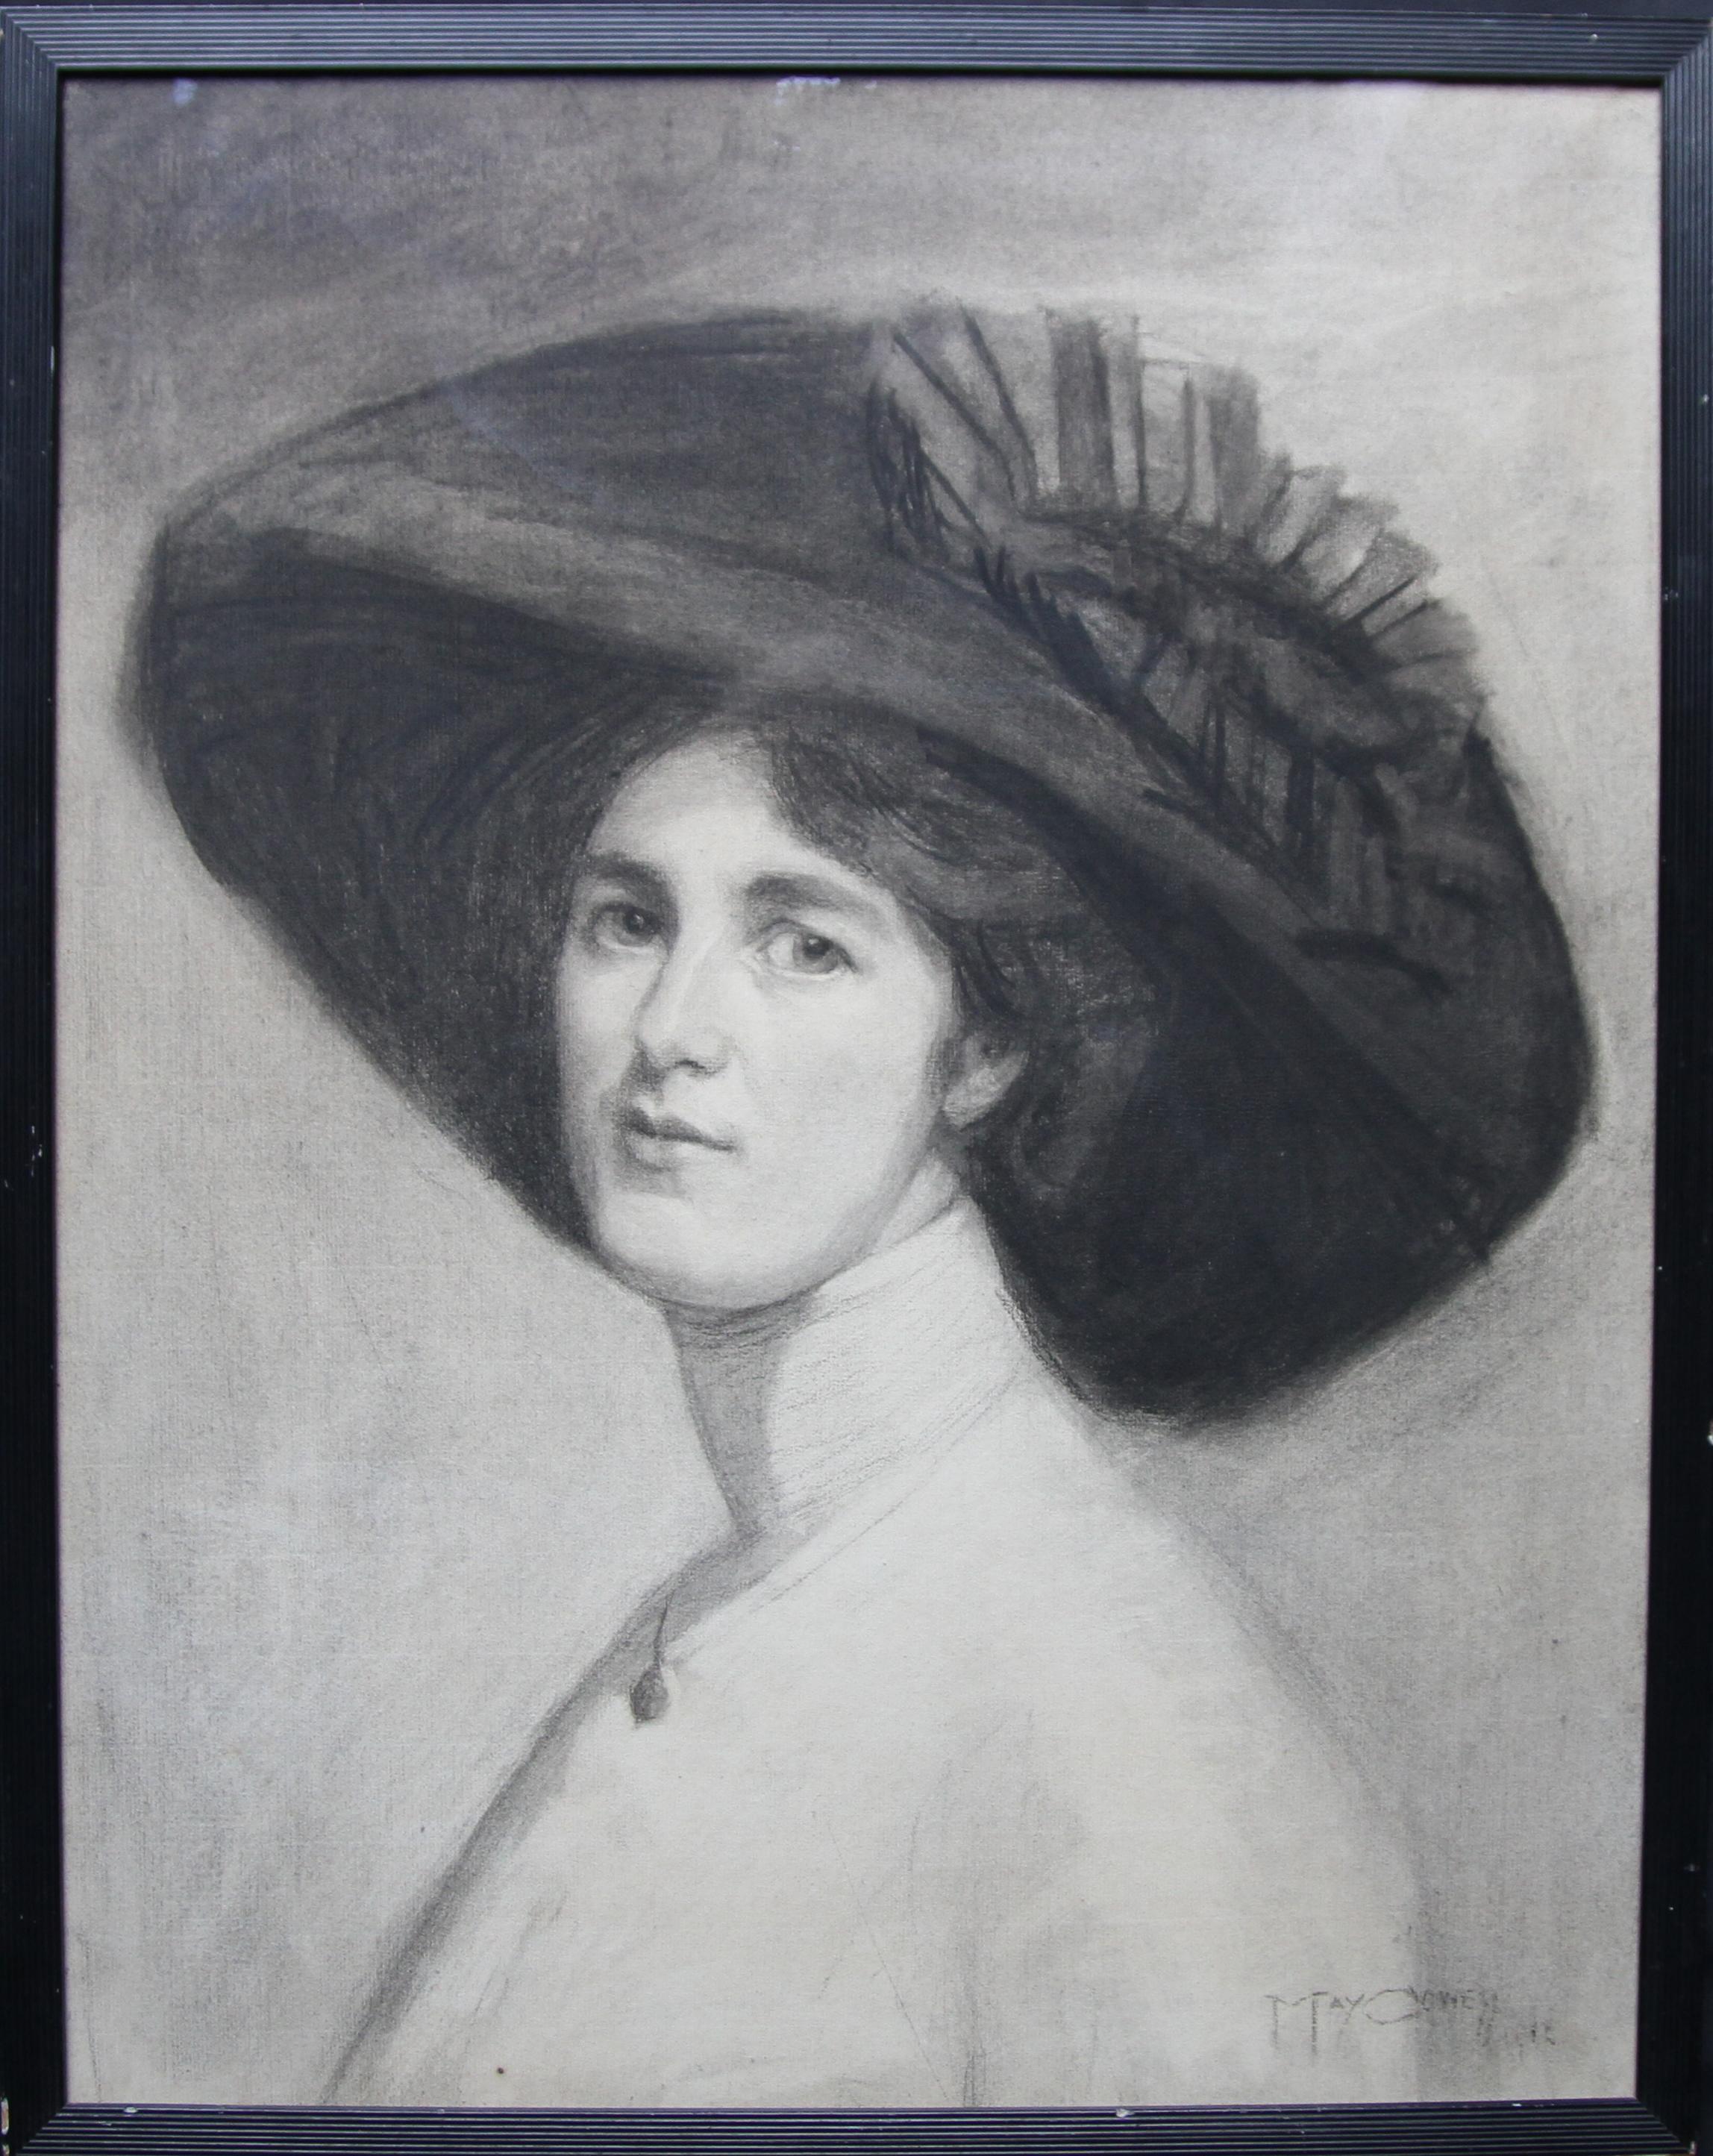 Porträt von Decima Moore – Schauspielerin und Suffragette, edwardianische Zeichnung einer Künstlerin